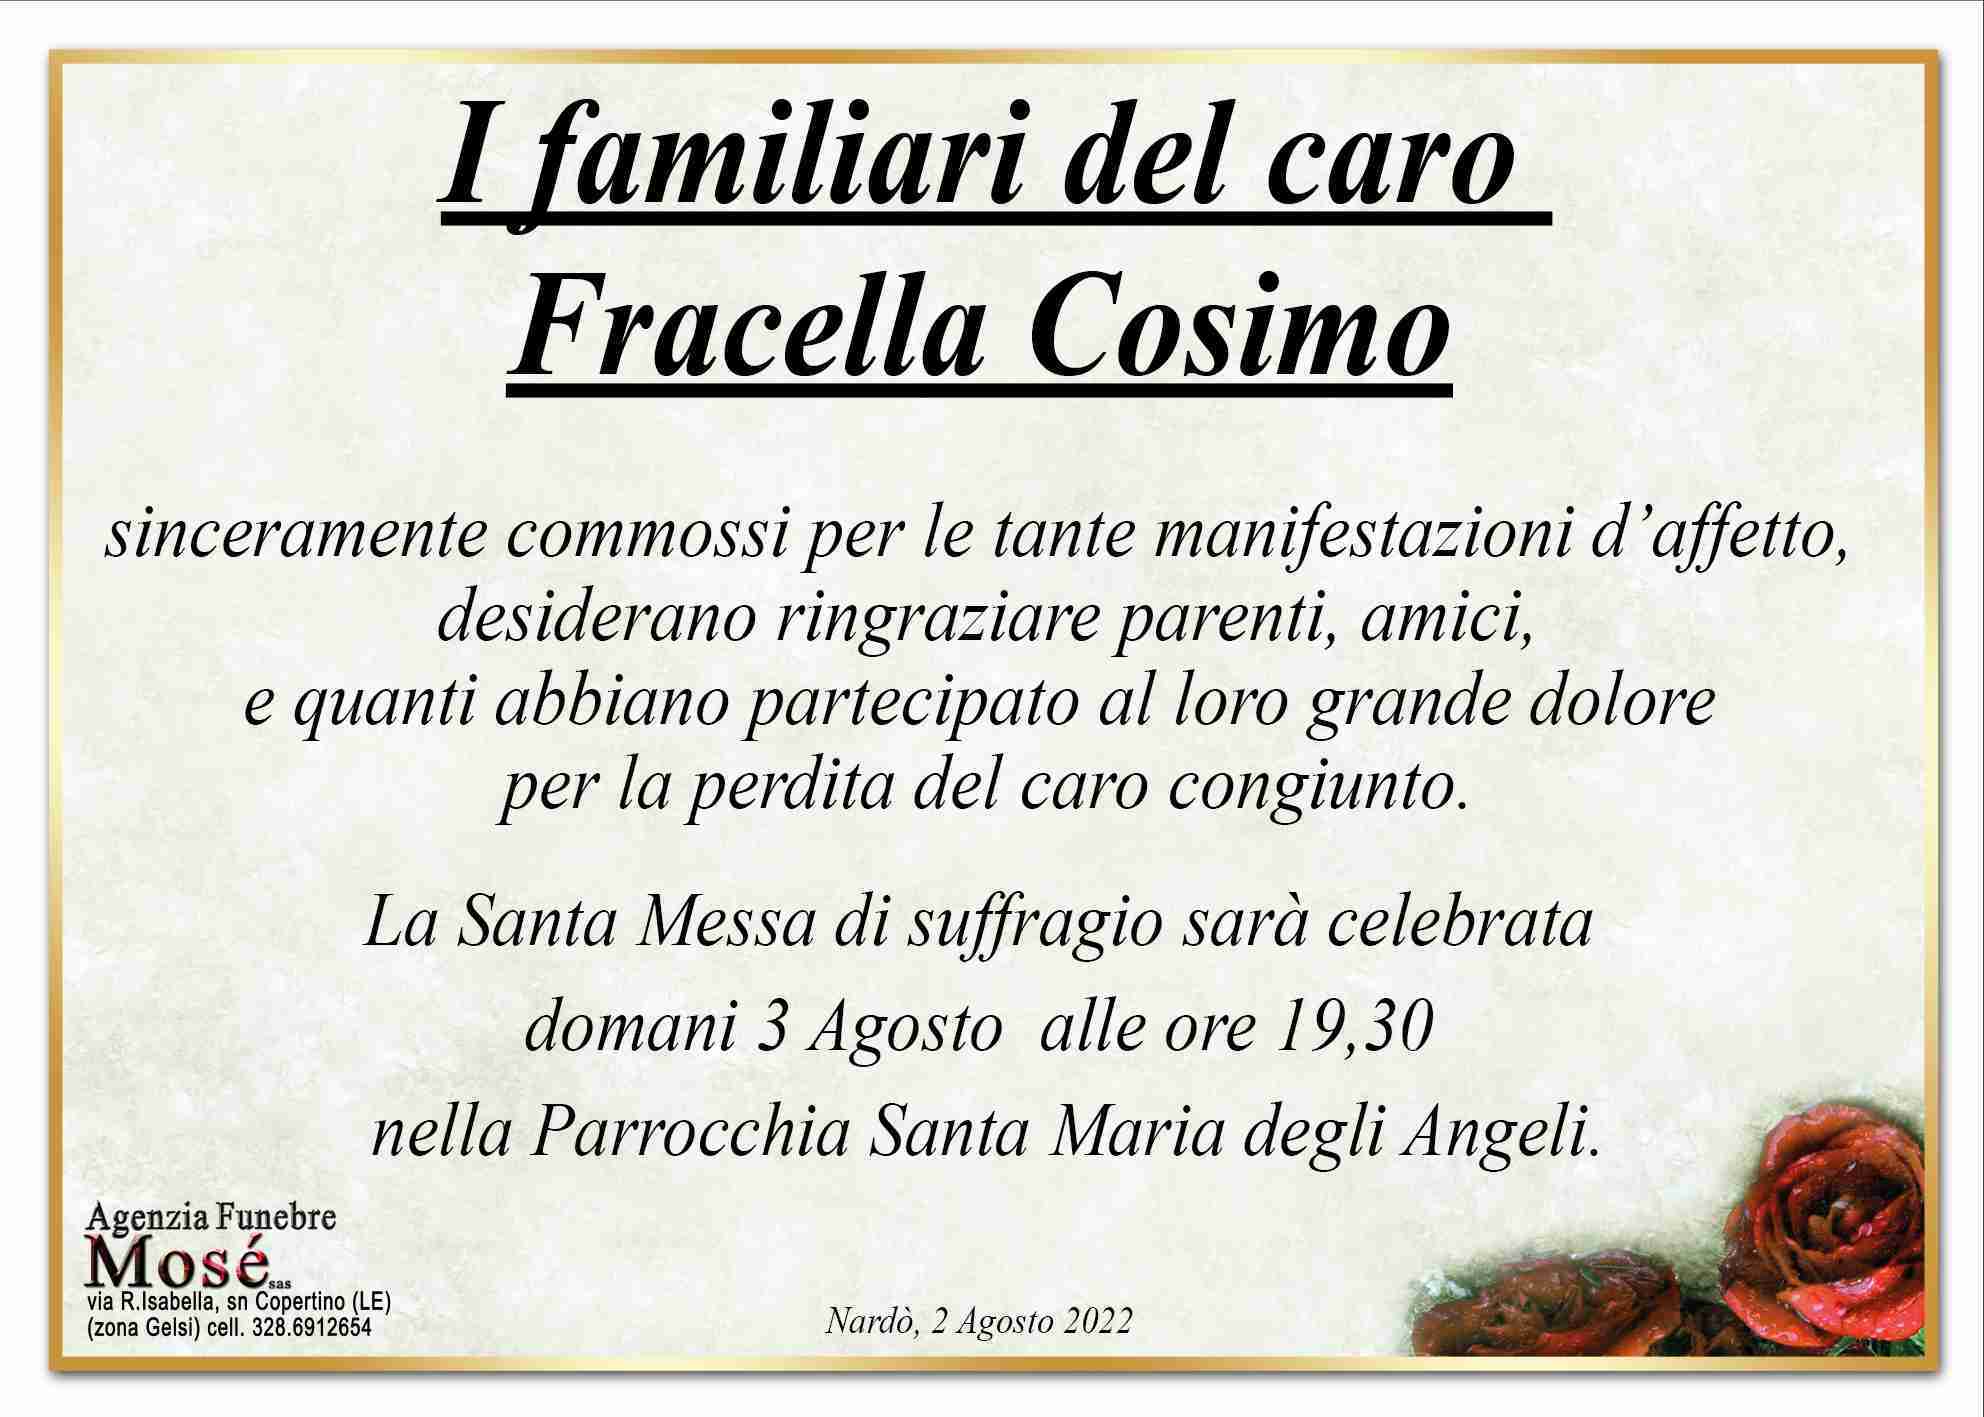 Cosimo Fracella